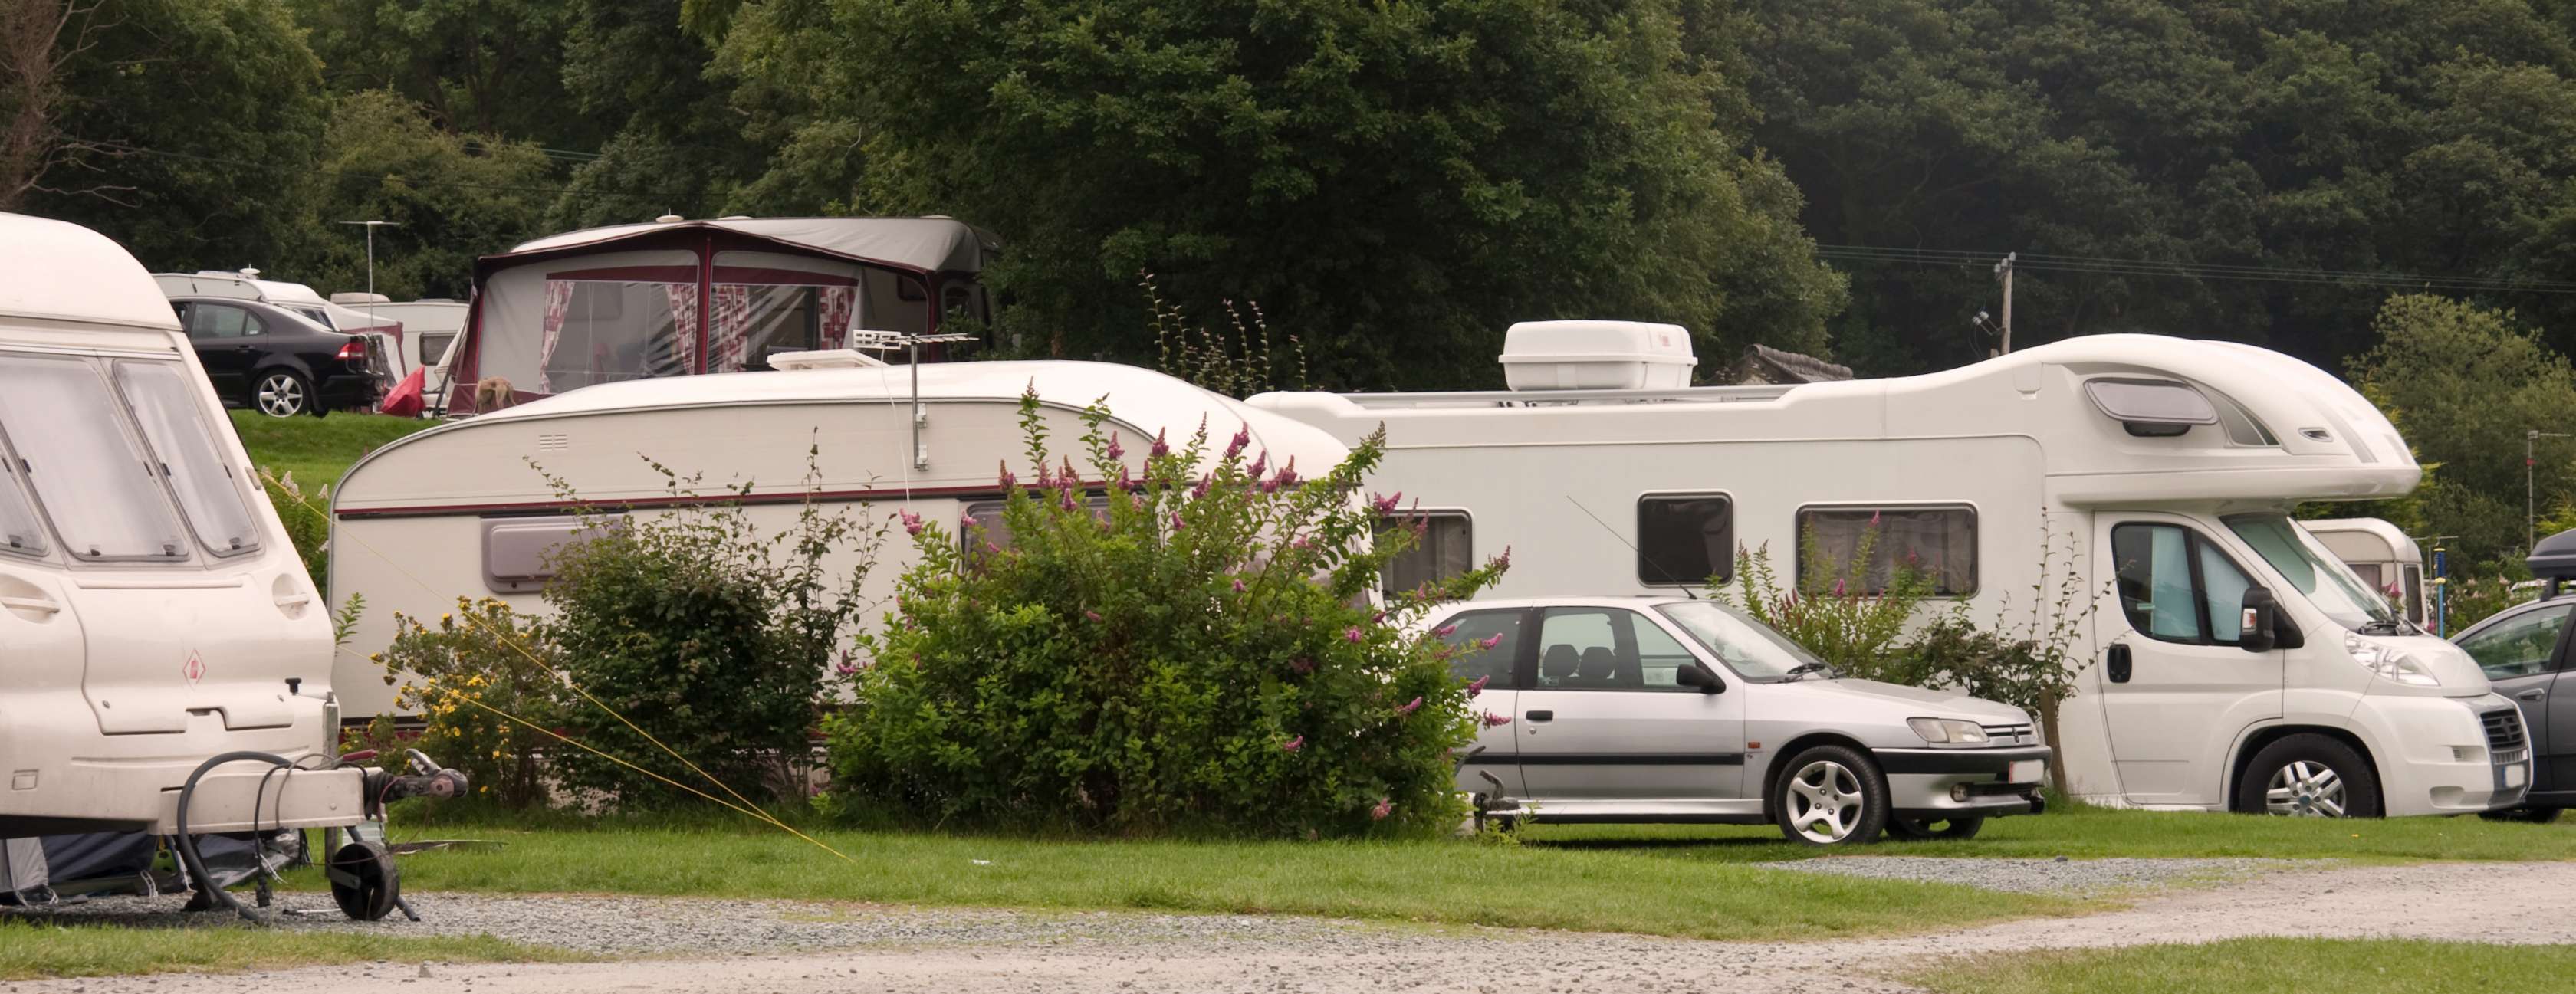 Campingplatz mit Wohnmobilen und Anhängern